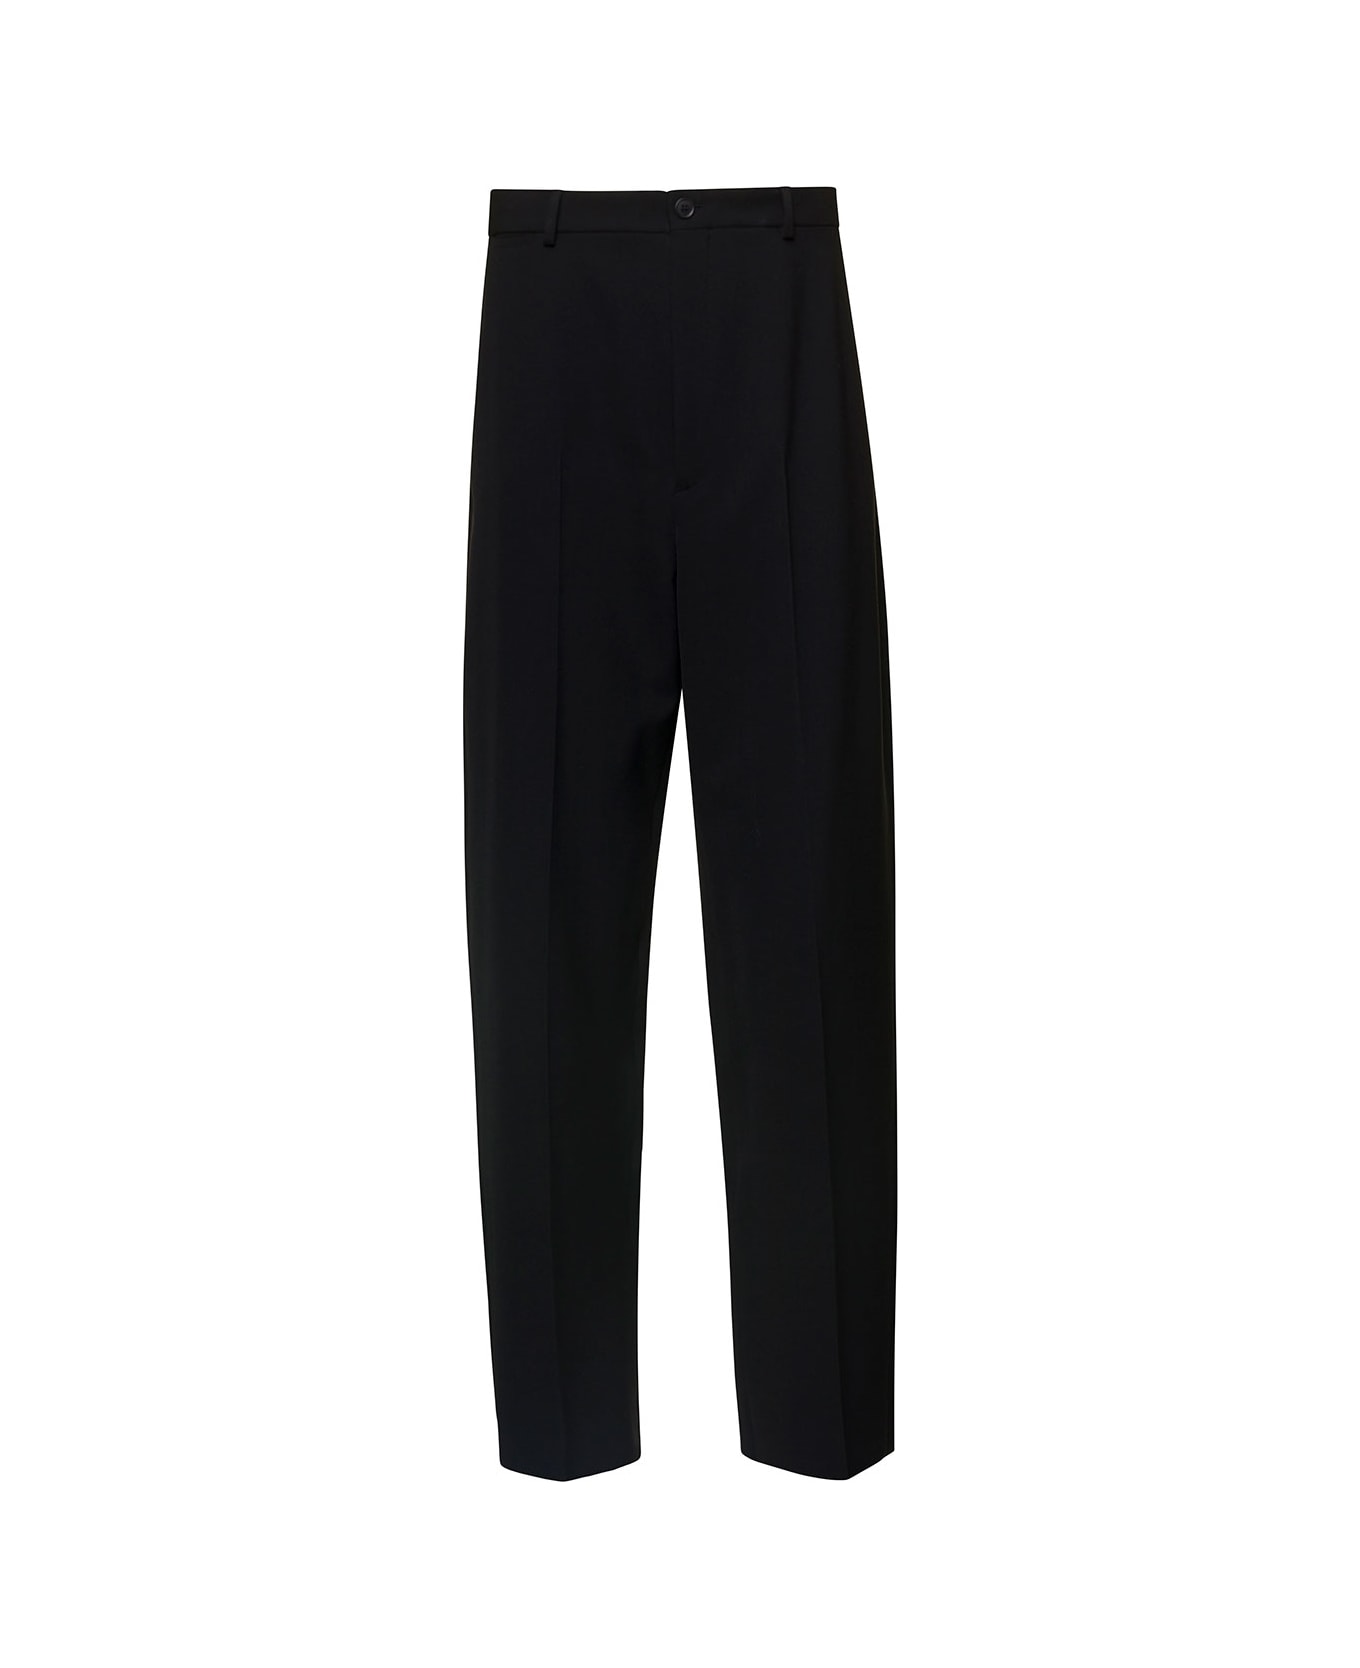 Balenciaga Tailored Pants - Black ボトムス